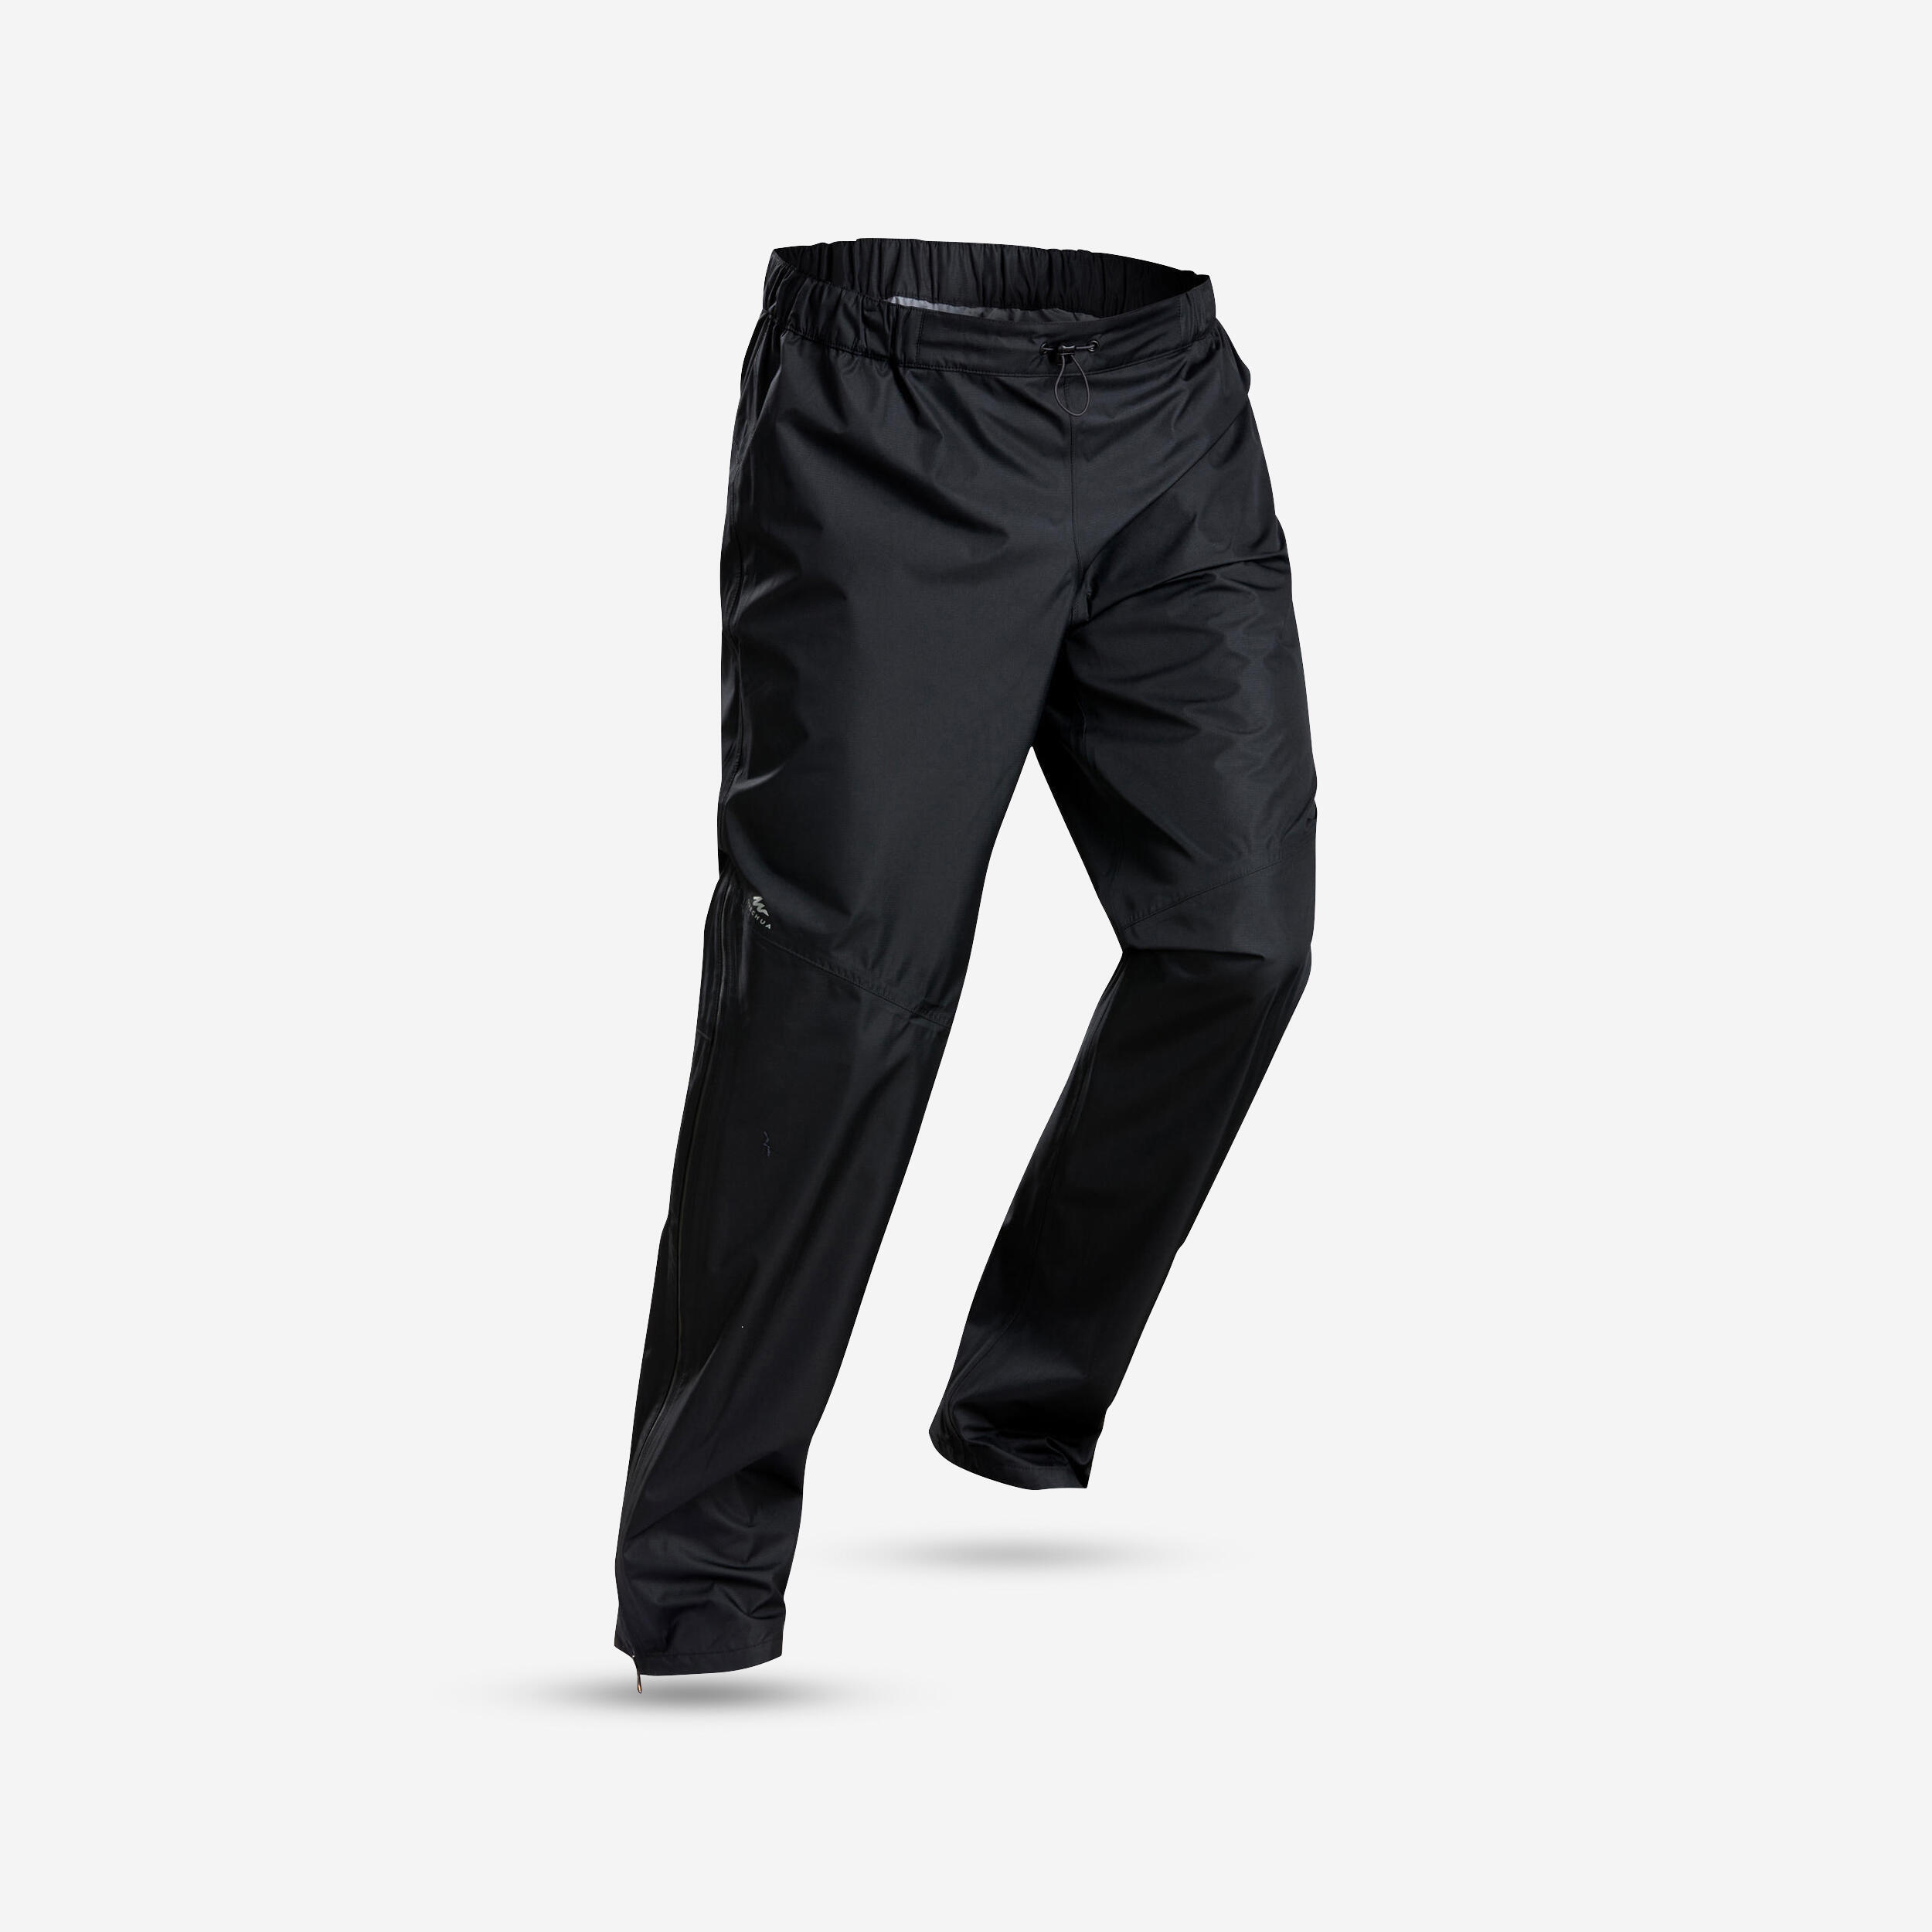 Karrimor Mens Sierra Pant Waterproof Trousers Pants Bottoms Windproof  Breathable | eBay